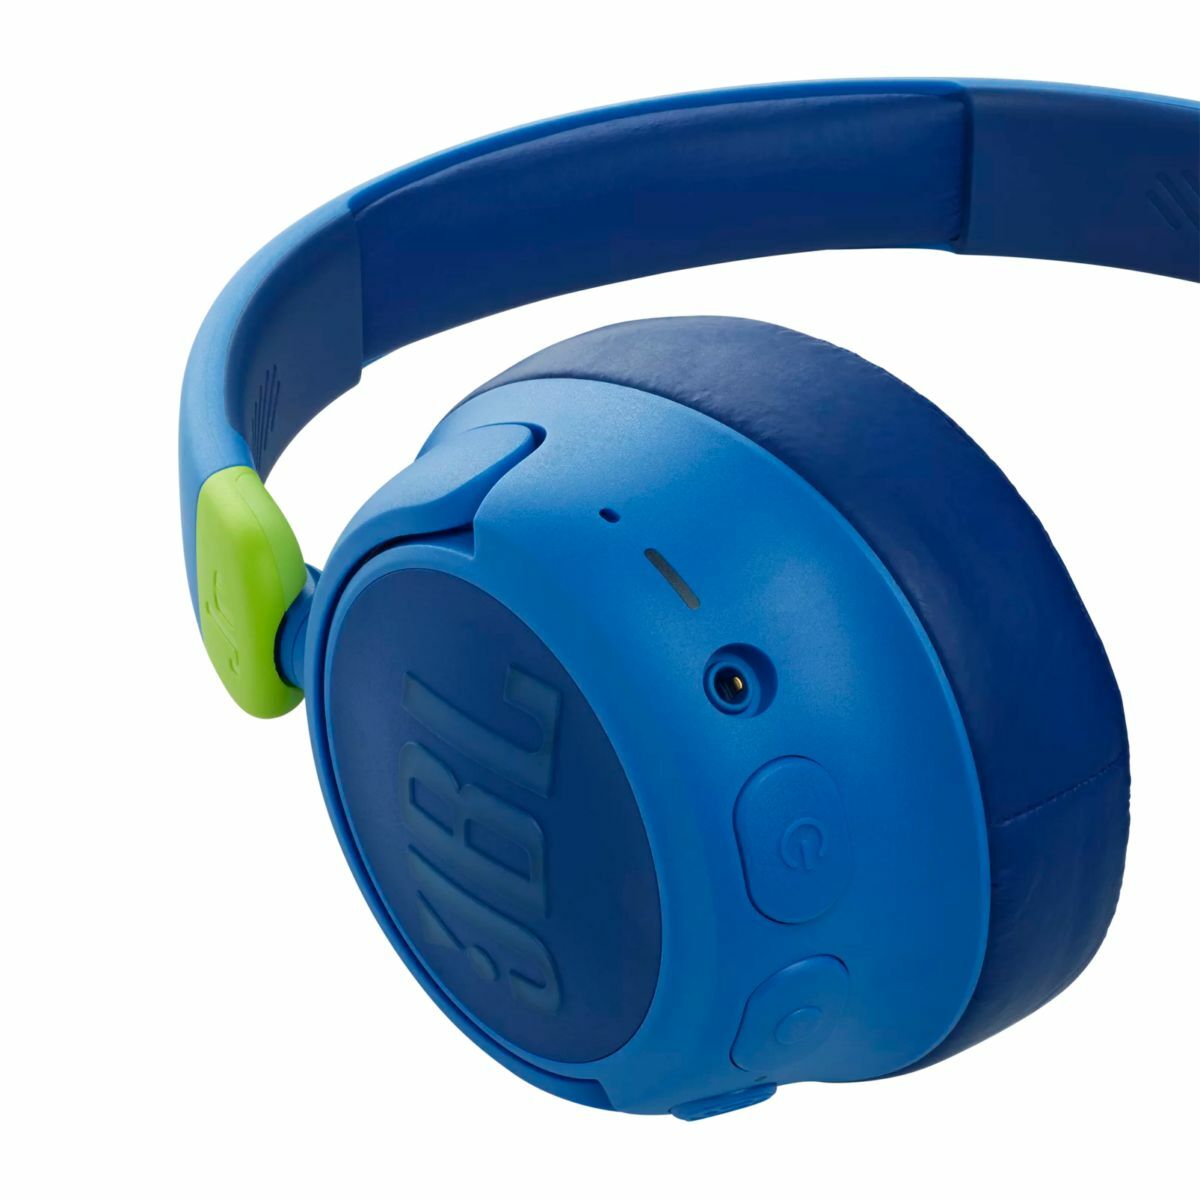 Kép 5/8 - JBL JR460NC Bluetooth fejhallgató gyerekeknek, zajszűrés funkcióval, kék EU